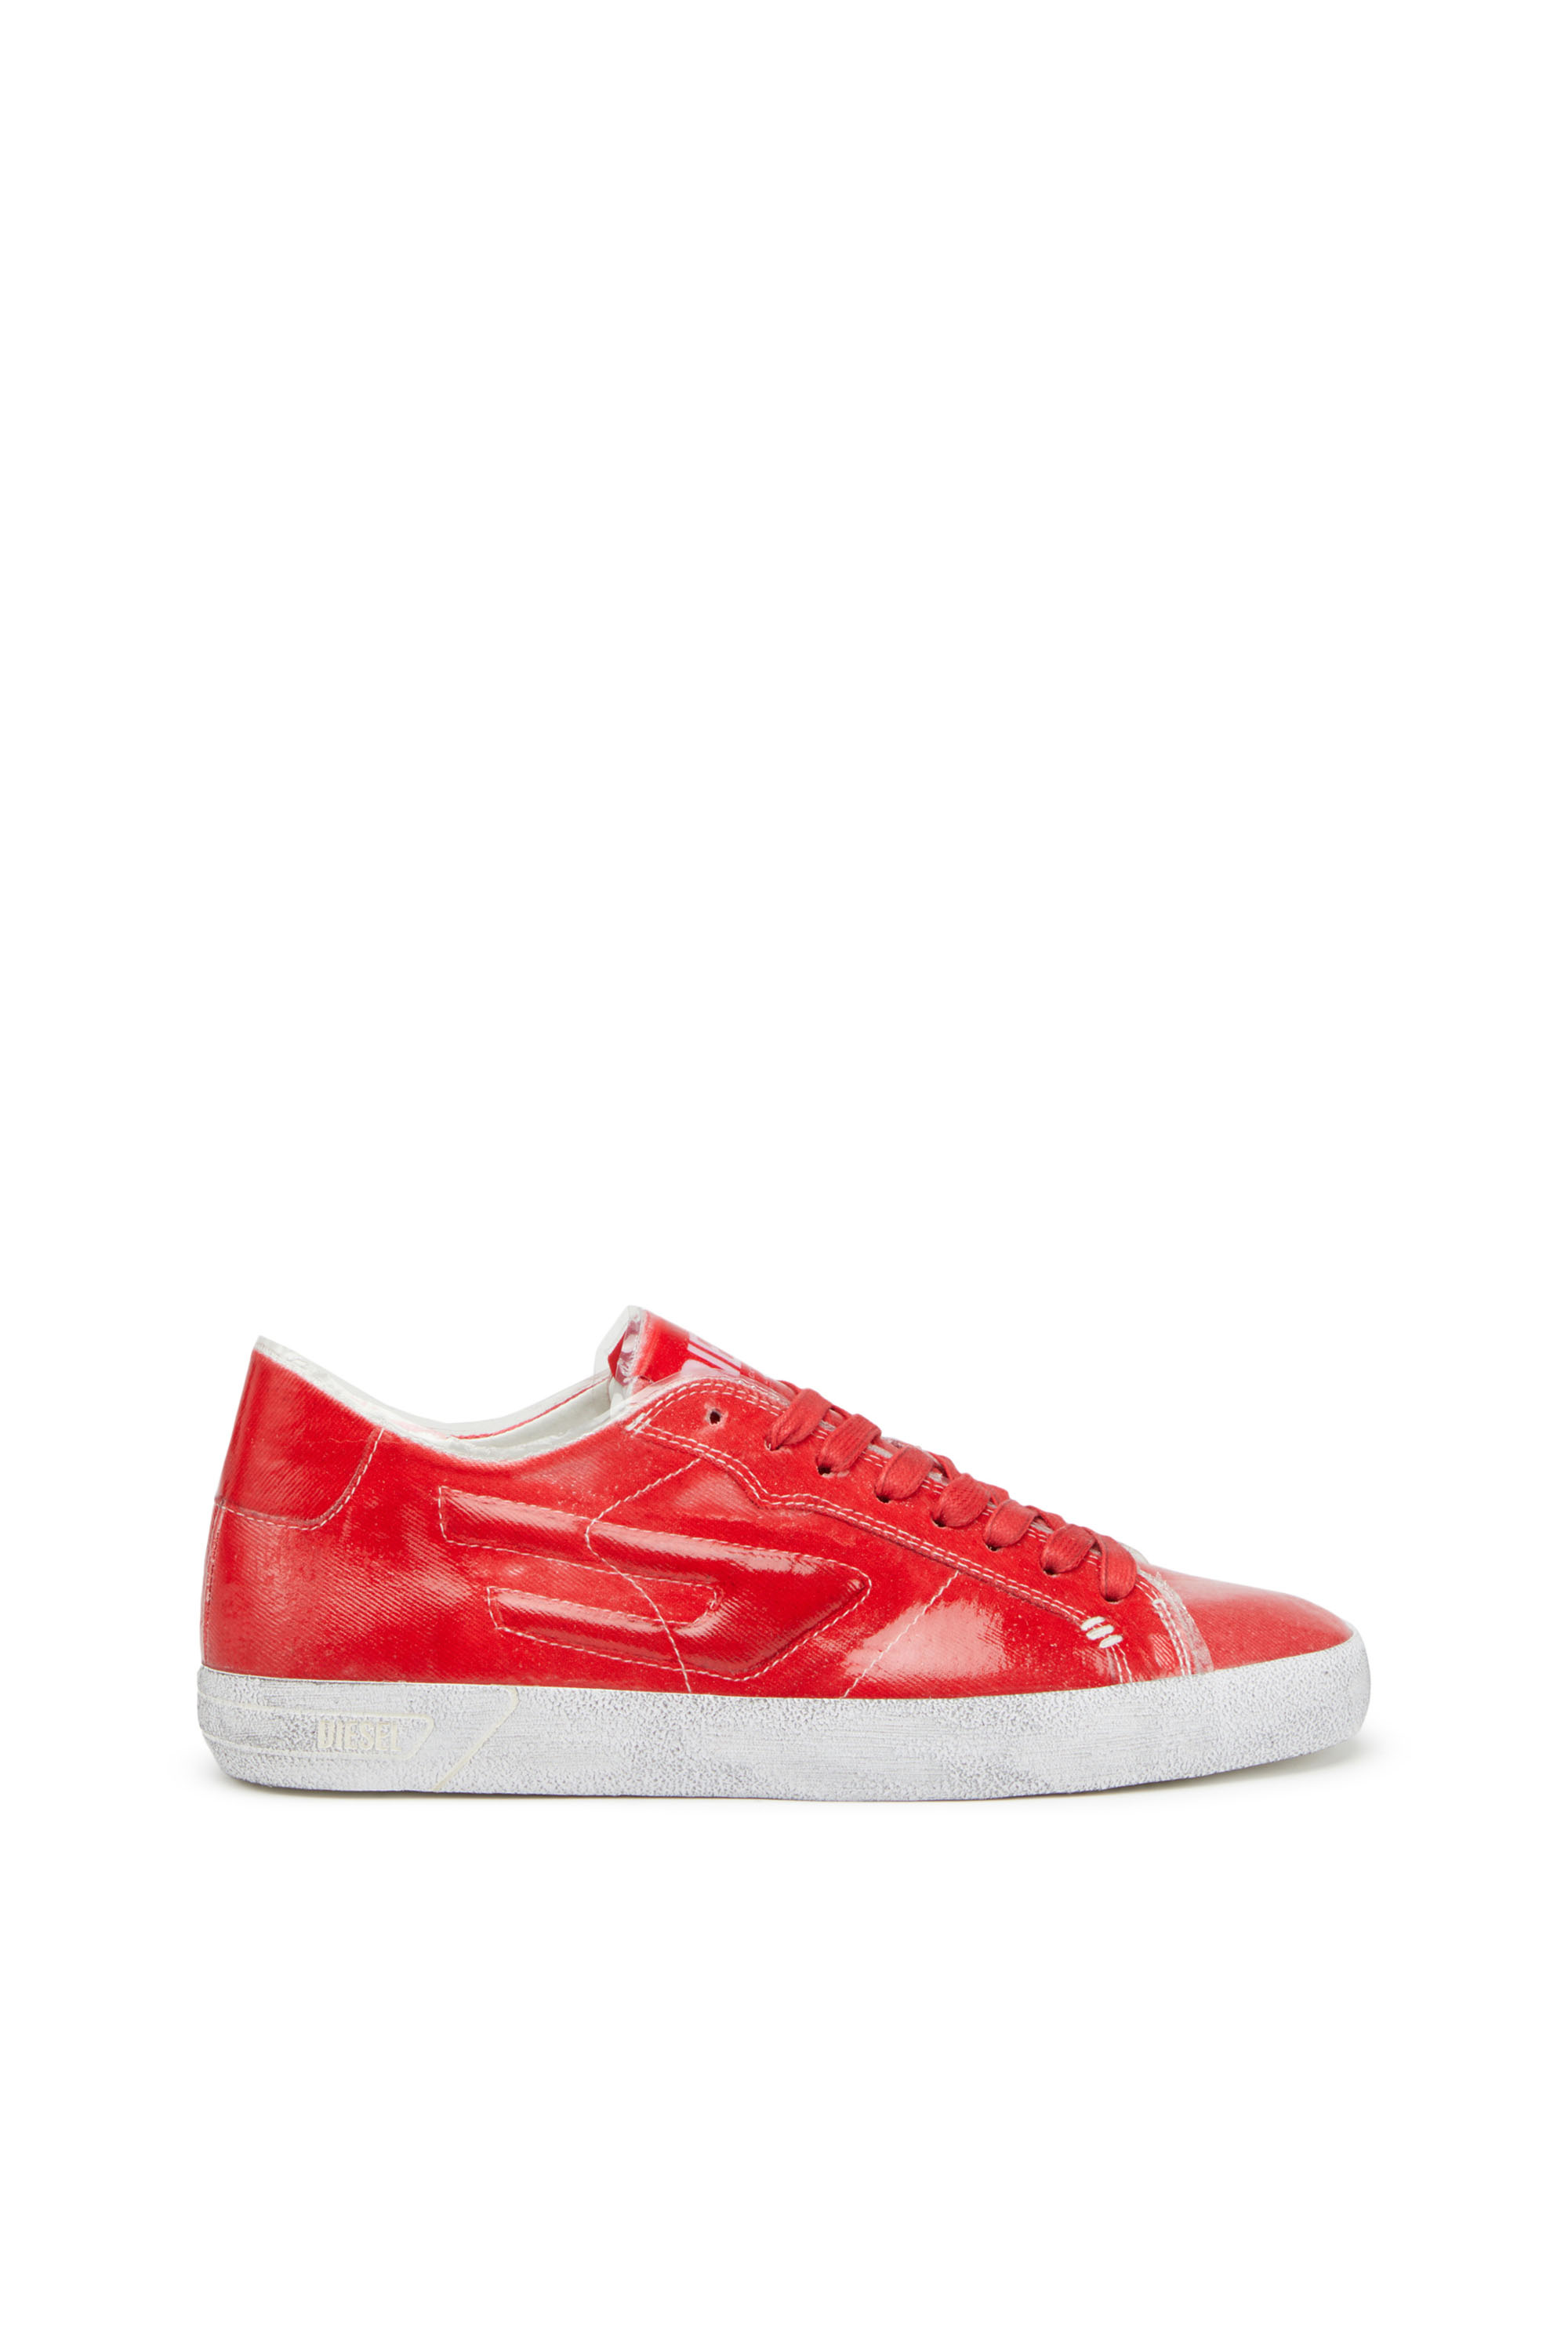 Diesel - S-Leroji Low W - Sneakers en toile avec superposition en TPU - Baskets - Femme - Rouge